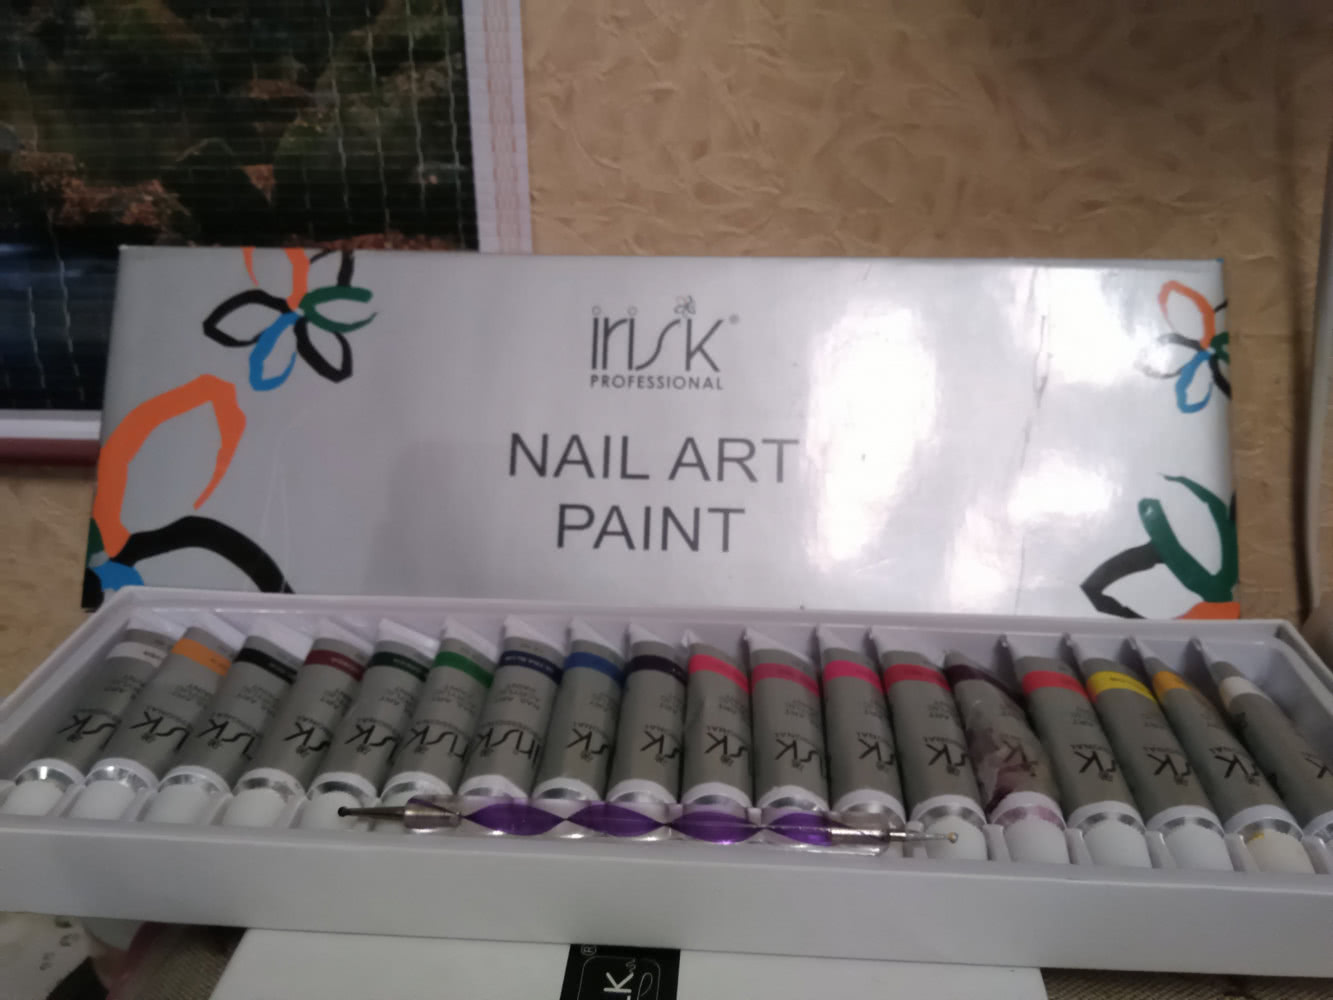 Irisk nail art paint акриловые краски для ногтей